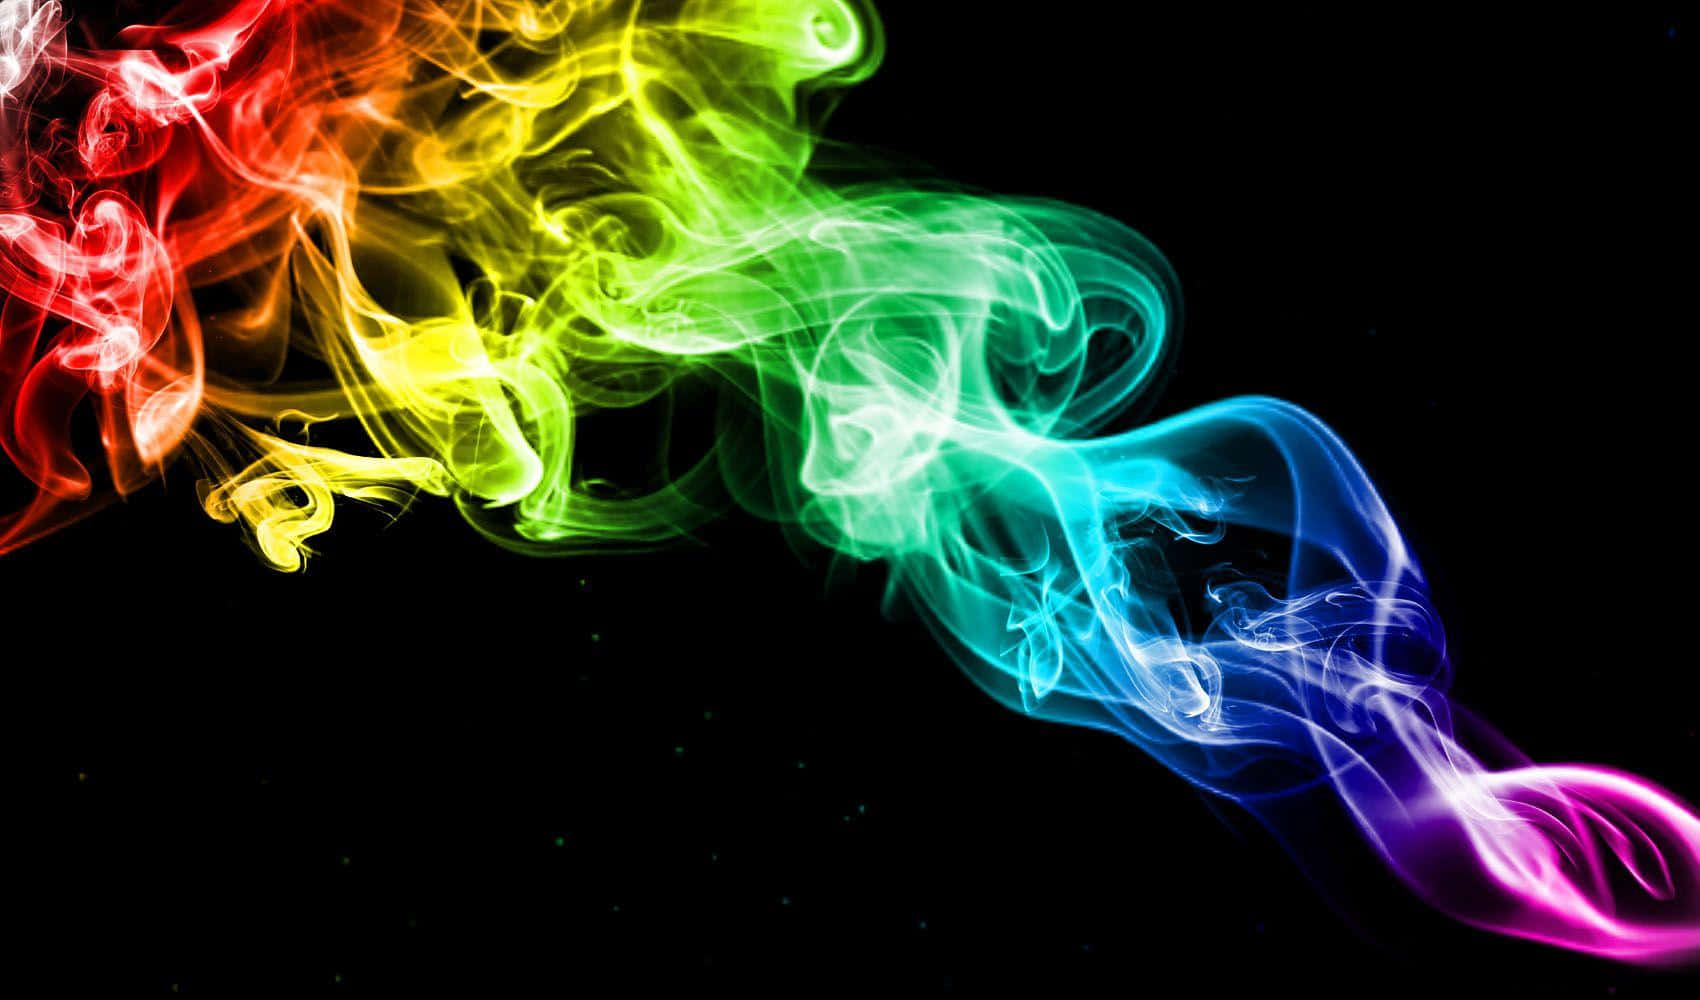 Respirepositivismo Com Fumaça Colorida No Plano De Fundo Do Seu Computador Ou Celular. Papel de Parede